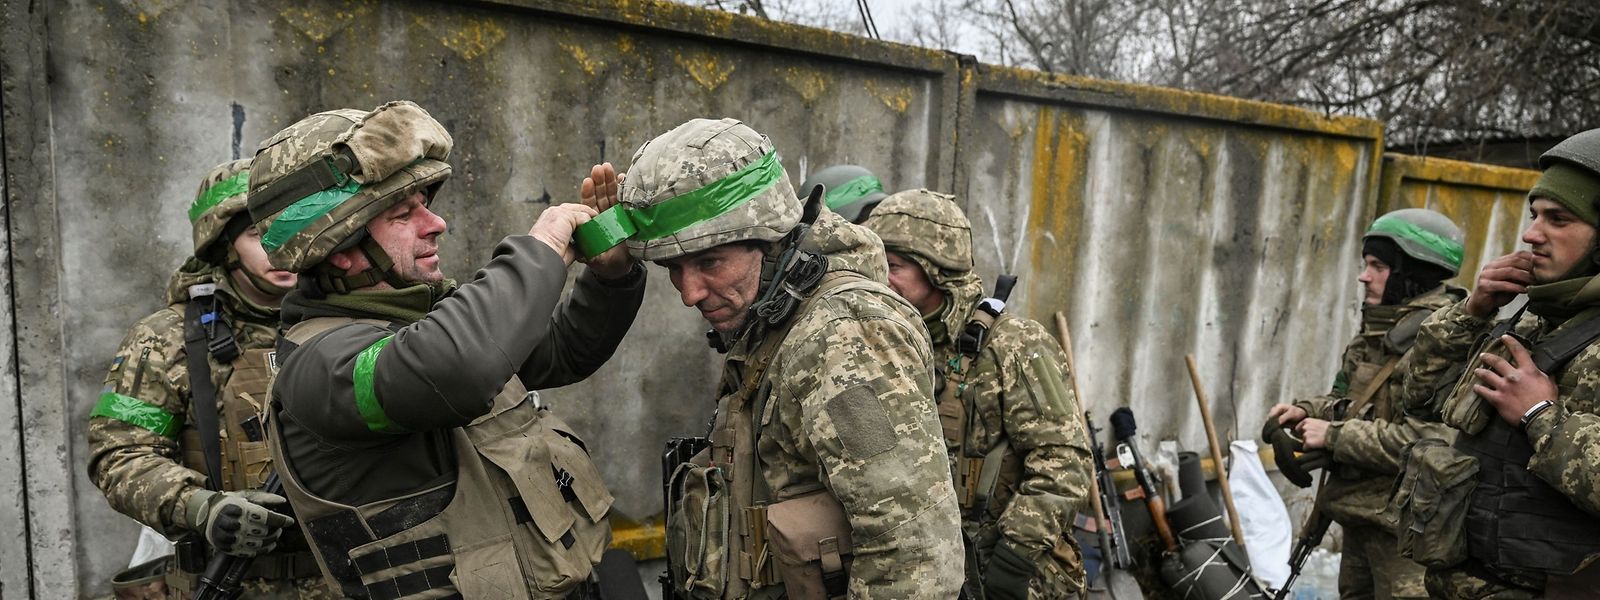 Ukrainische Soldaten bereiten sich auf einen Einsatz vor.